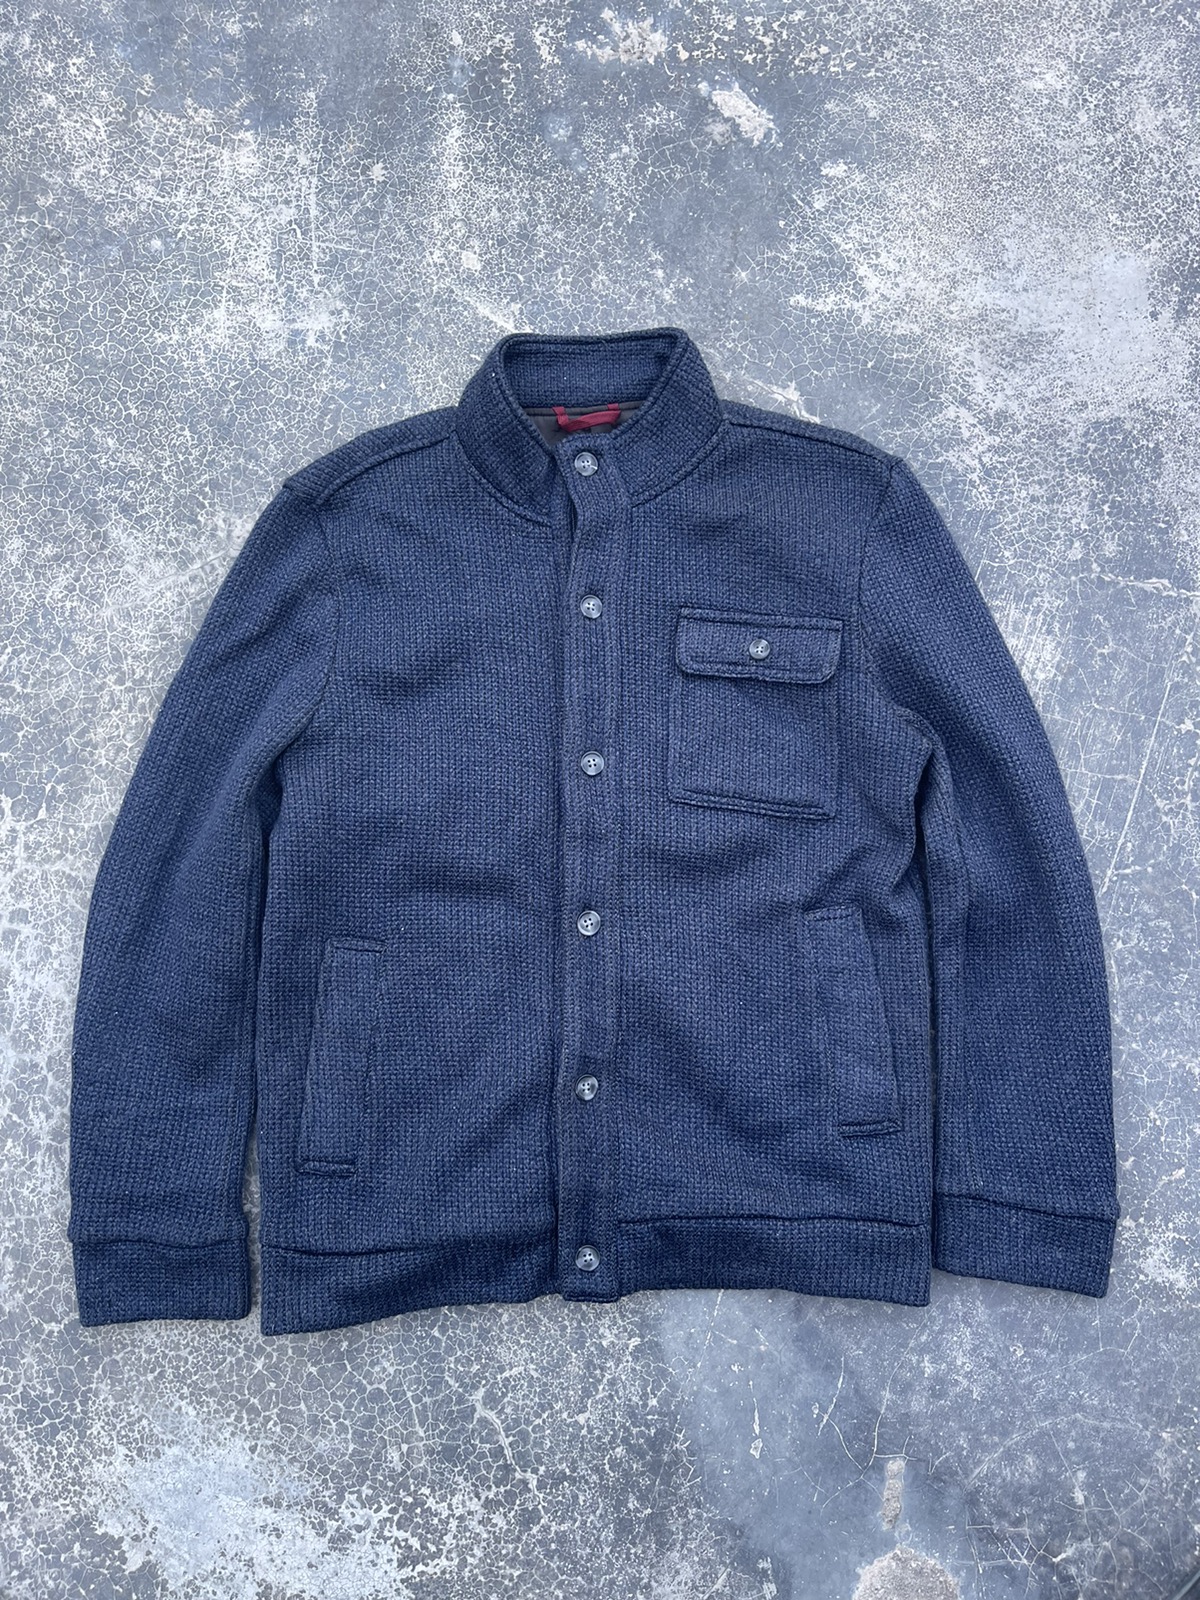 Kansai Yamamoto - Kansai Yamamoto Knitted wool light jacket - 1